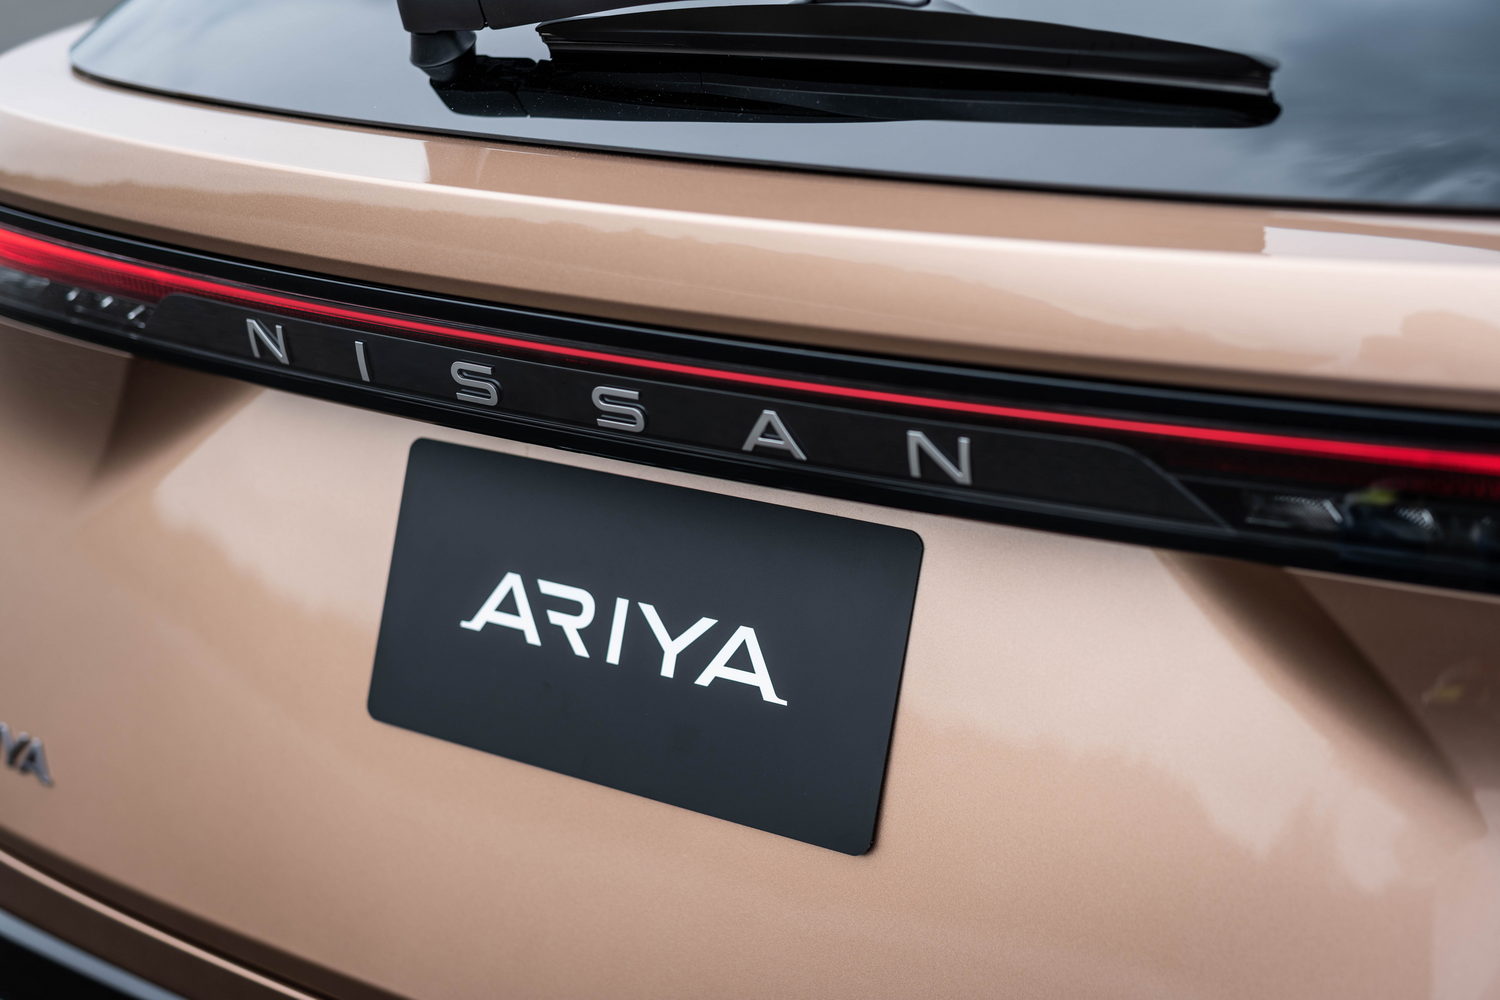 Nissan Ariya 63kWh (2022 prototype)